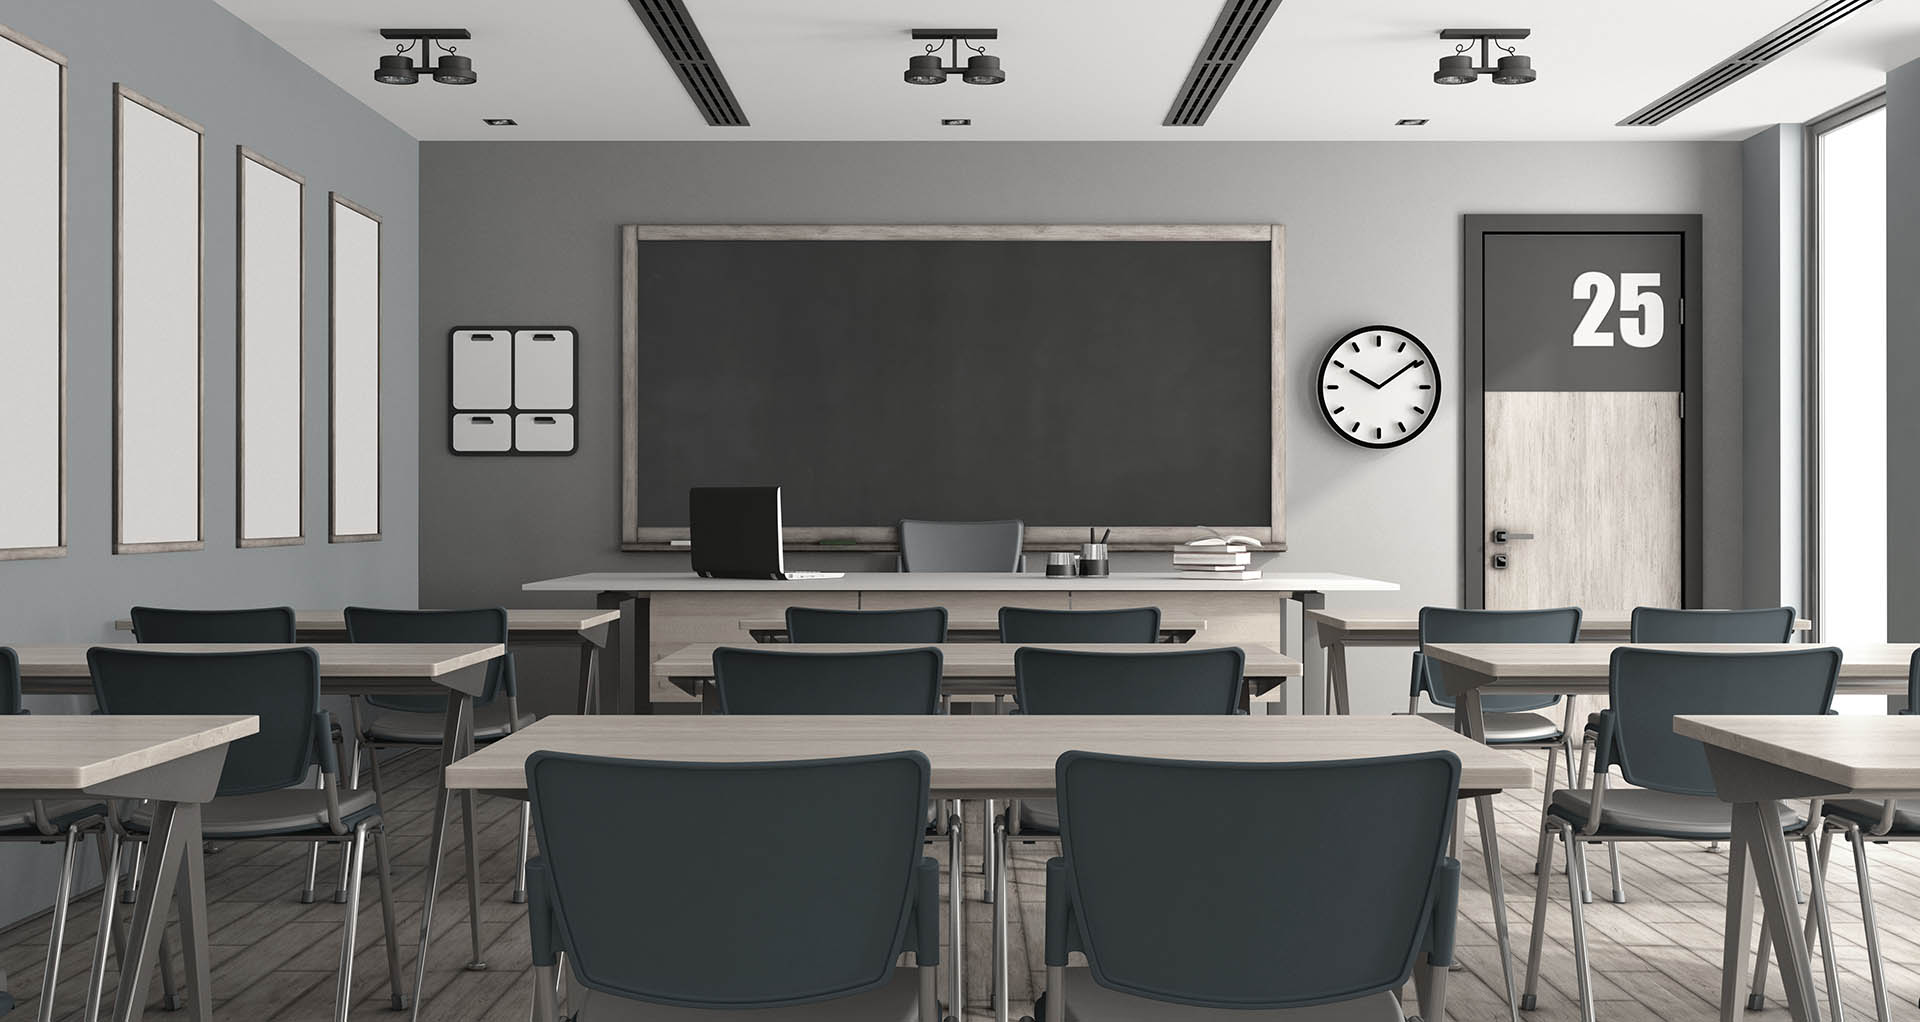 kontor och miljö inreder klassrum från möbler till teknik